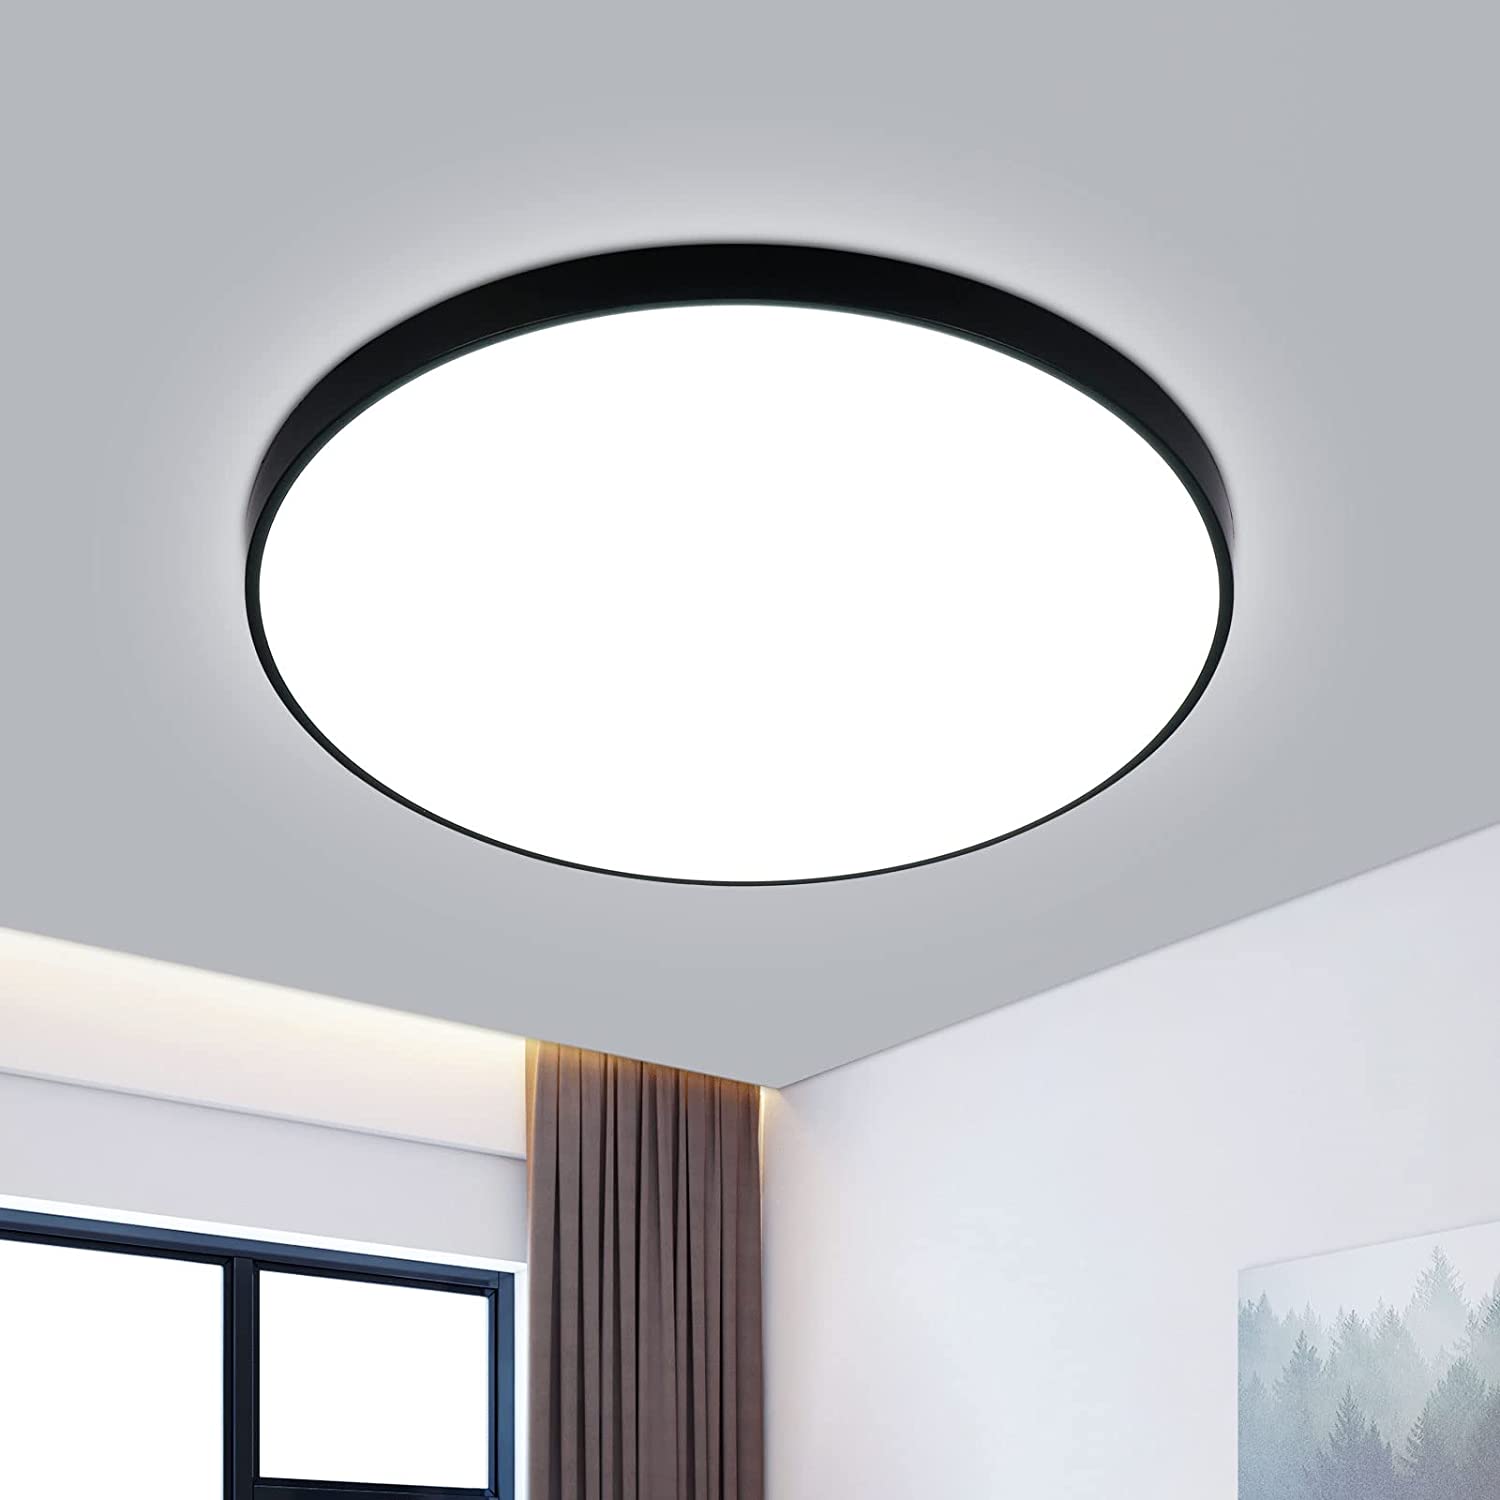 Plafonnier LED Rond, Lampe de Plafond pour Salle de Bain 32W 2958LM, IP54  Imperméable 6500K Blanc